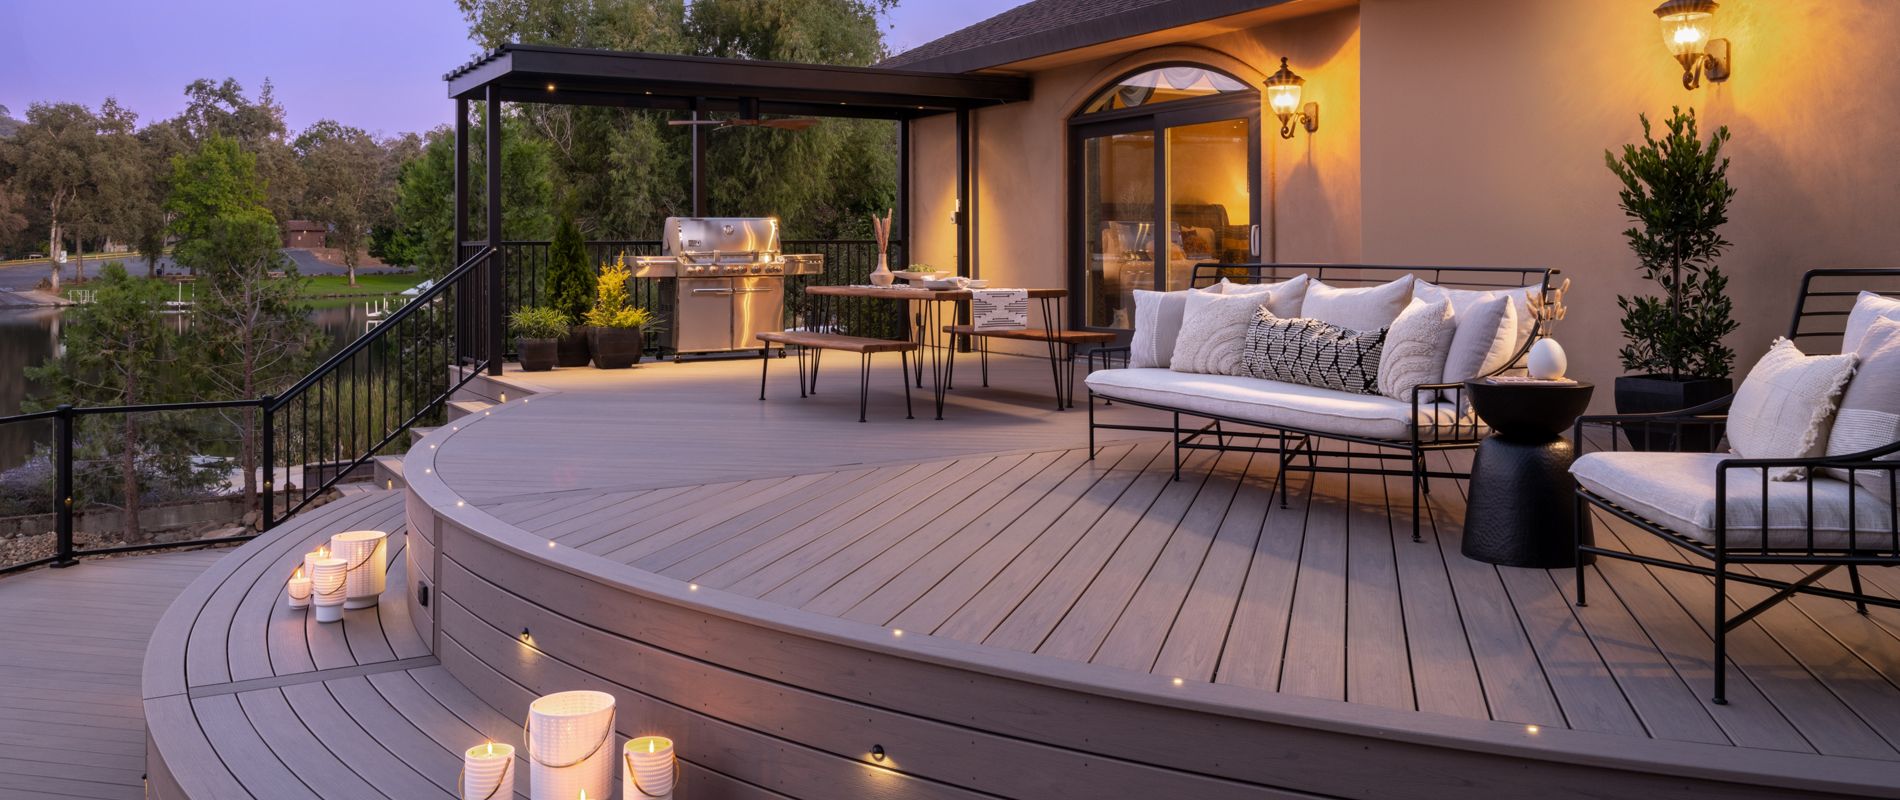 laminate veranda decking designs